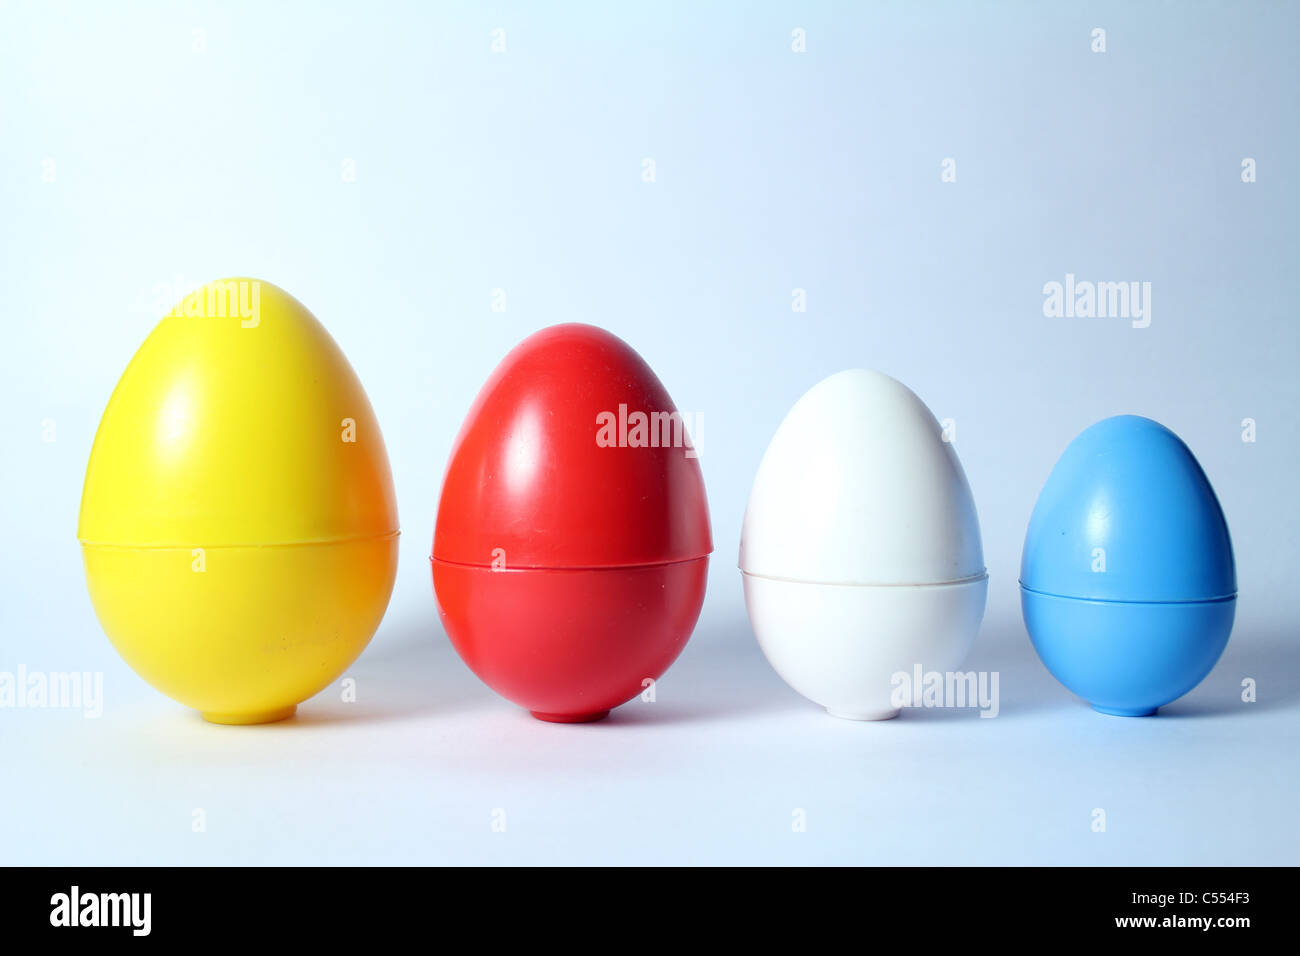 Inquadratura concettuale di uova di plastica di diverse dimensioni Foto Stock